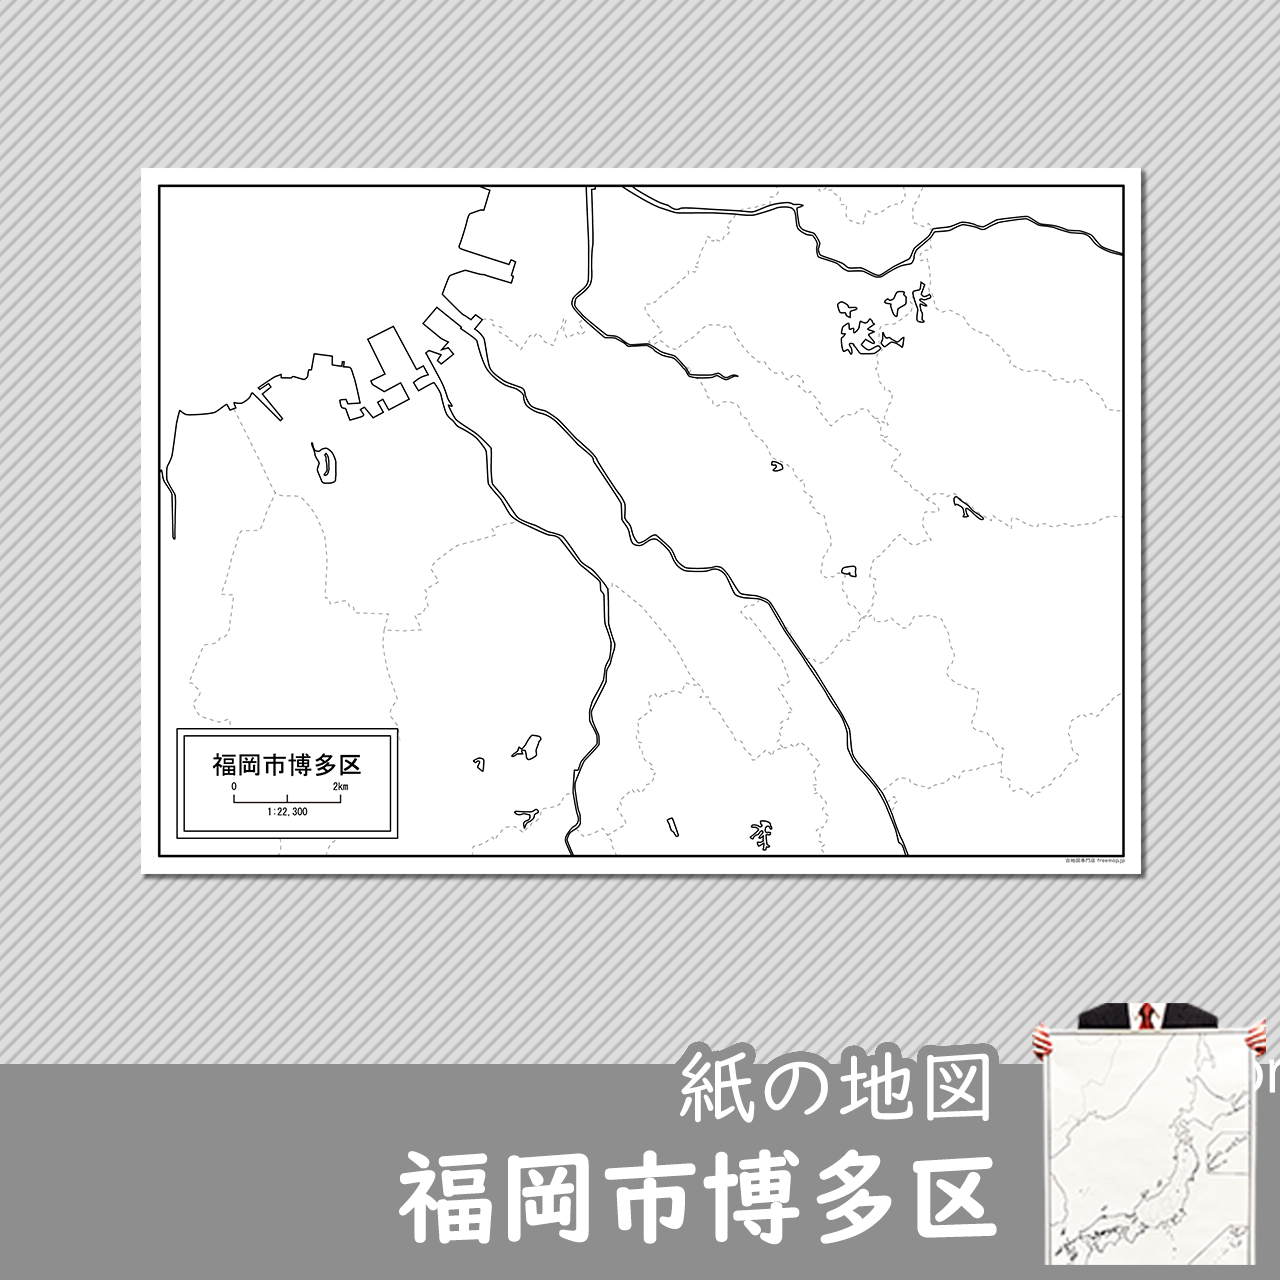 福岡市博多区の紙の白地図のサムネイル